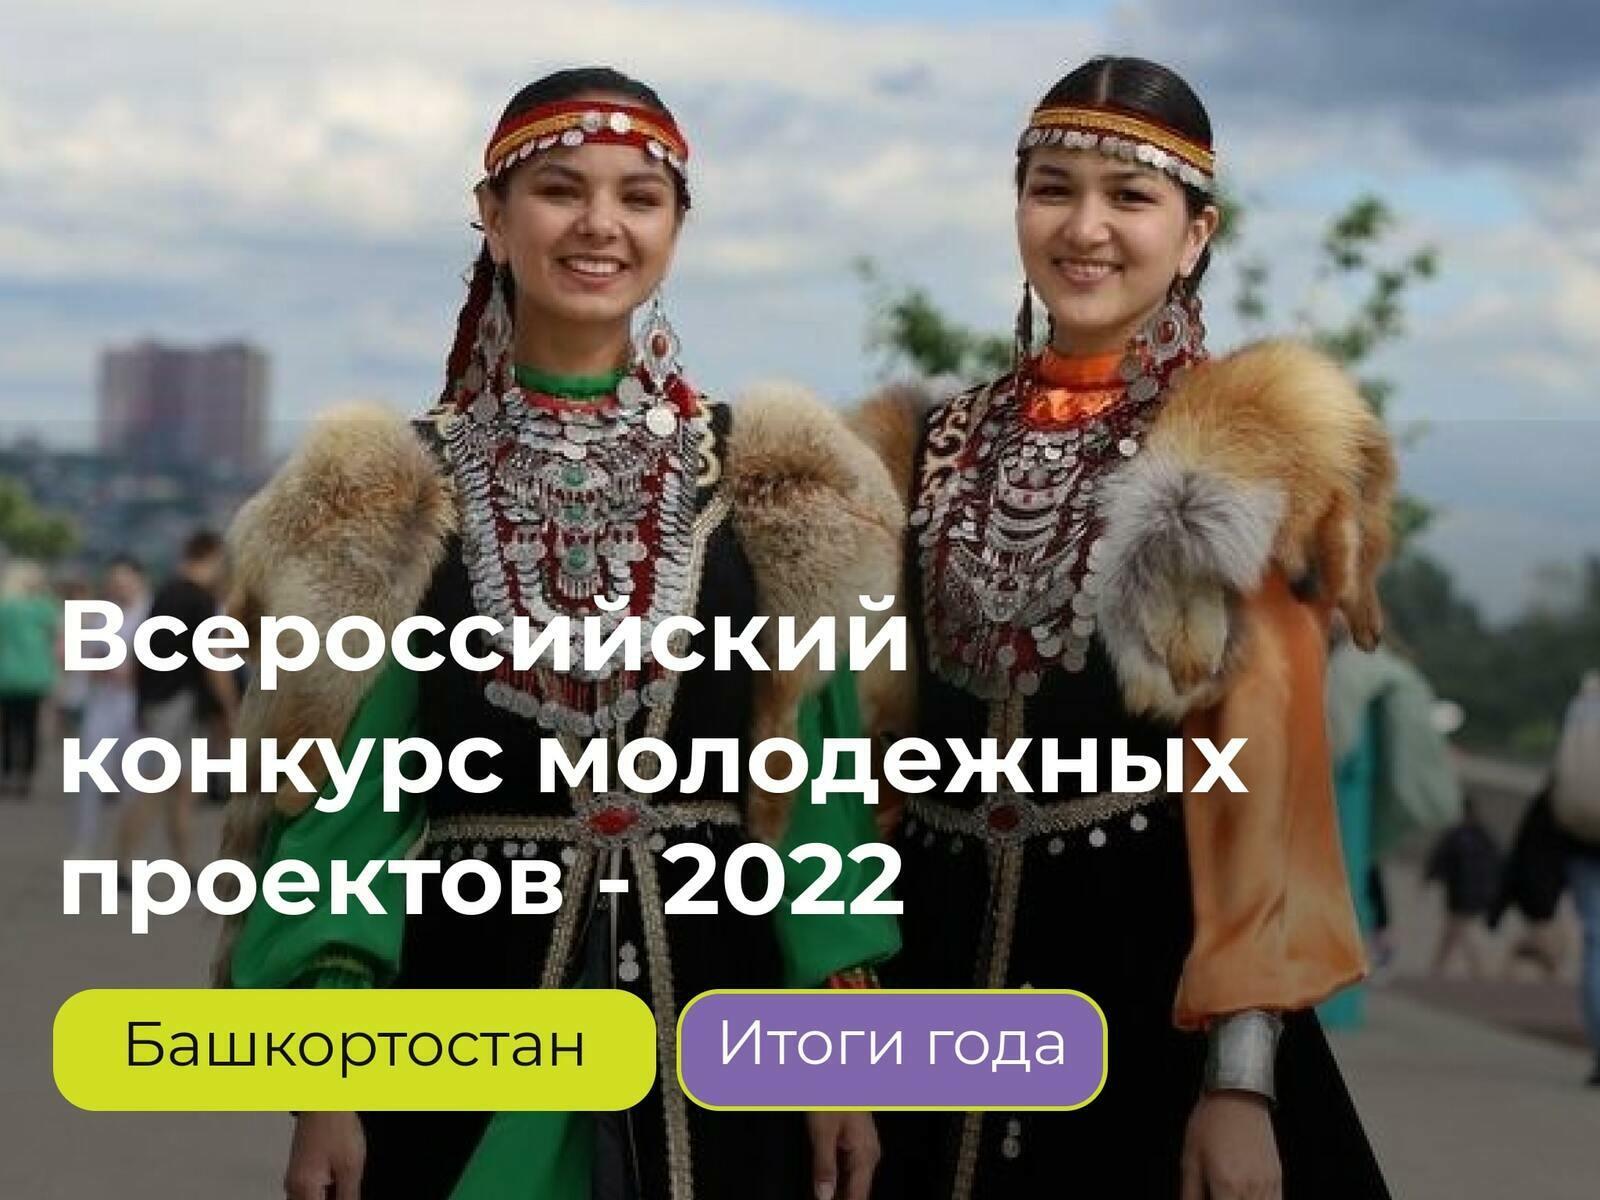 Более 56 млн рублей грантовой поддержки привлекли молодежные проекты из Башкортостана в 2022 году